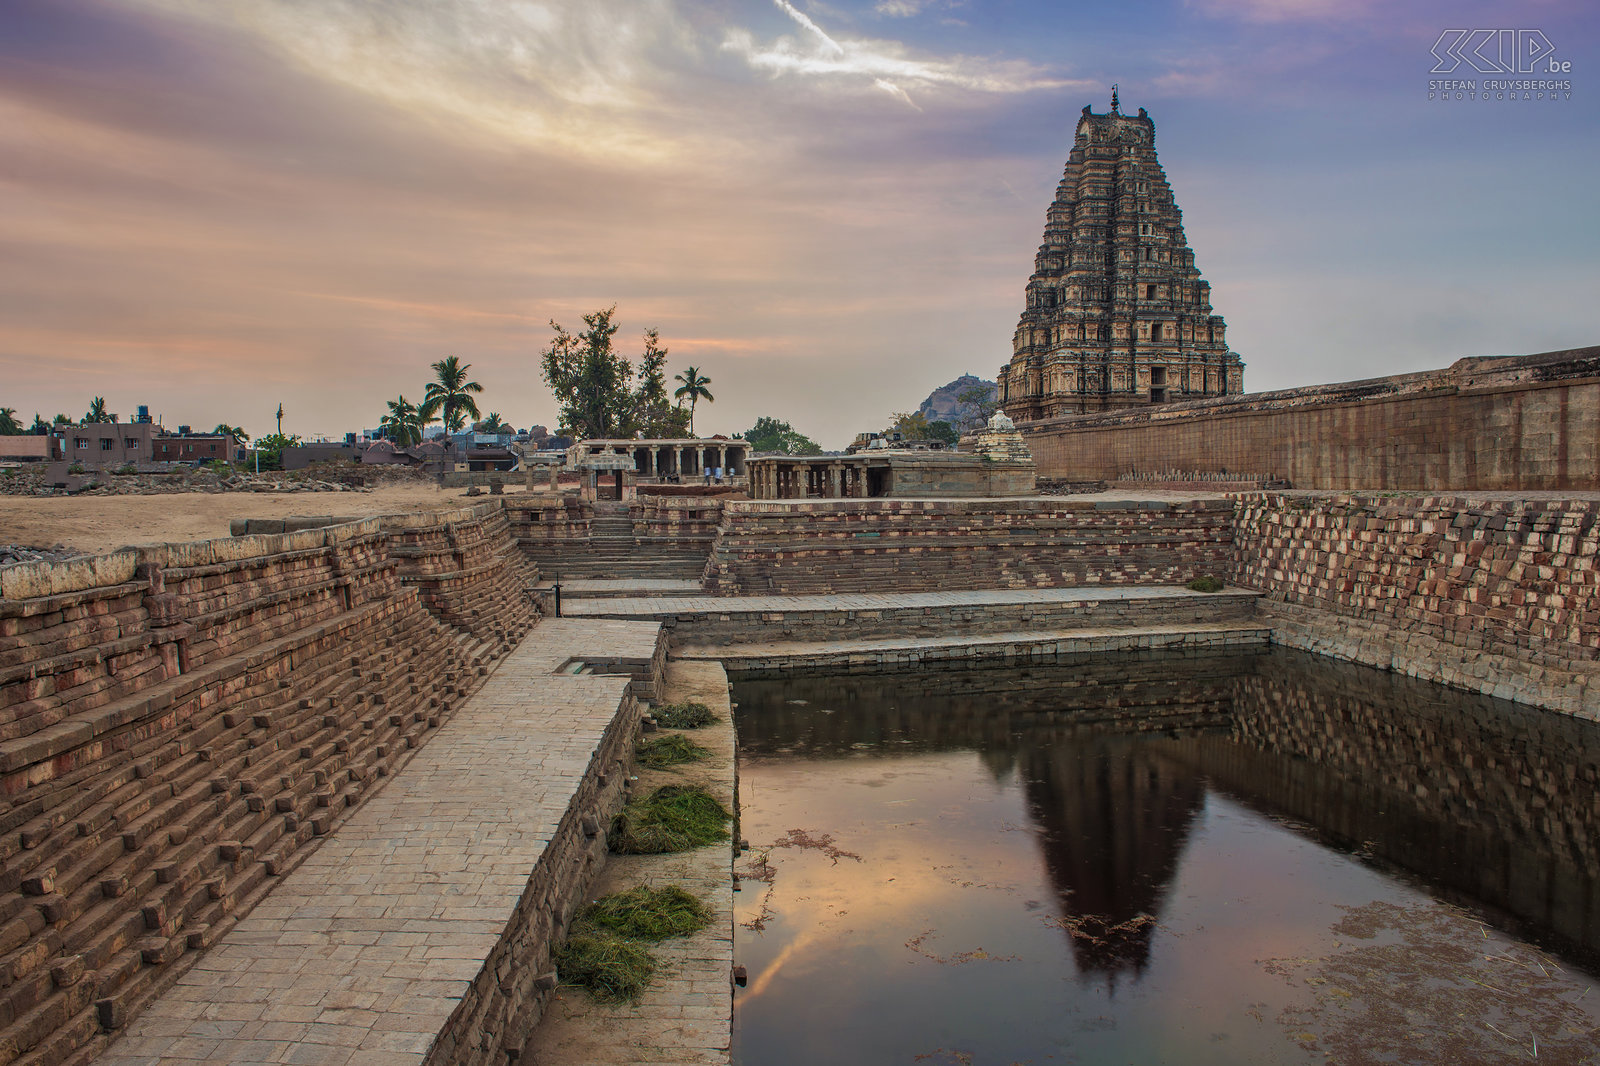 Hampi - Virupaksha tempel Zonsopgang aan de noordzijde van de Virupaksha tempel in Hampi. De prachtige oude stad van Hampi is gelegen in de deelstaat Karnataka in het zuiden van India. In de 13e tot de 17e eeuw was het de hoofdstad van het Vijayanagararijk, maar aangenomen wordt dat deze tempel gebouwd werd in de 7e eeuw na Chr. Deze indrukwekkende tempel is nog steeds een pelgrimsoord voor de aanbidders van Shiva. De oostelijke toren, genaamd Gopura, is 49m hoog en heeft 9 verdiepingen. Stefan Cruysberghs